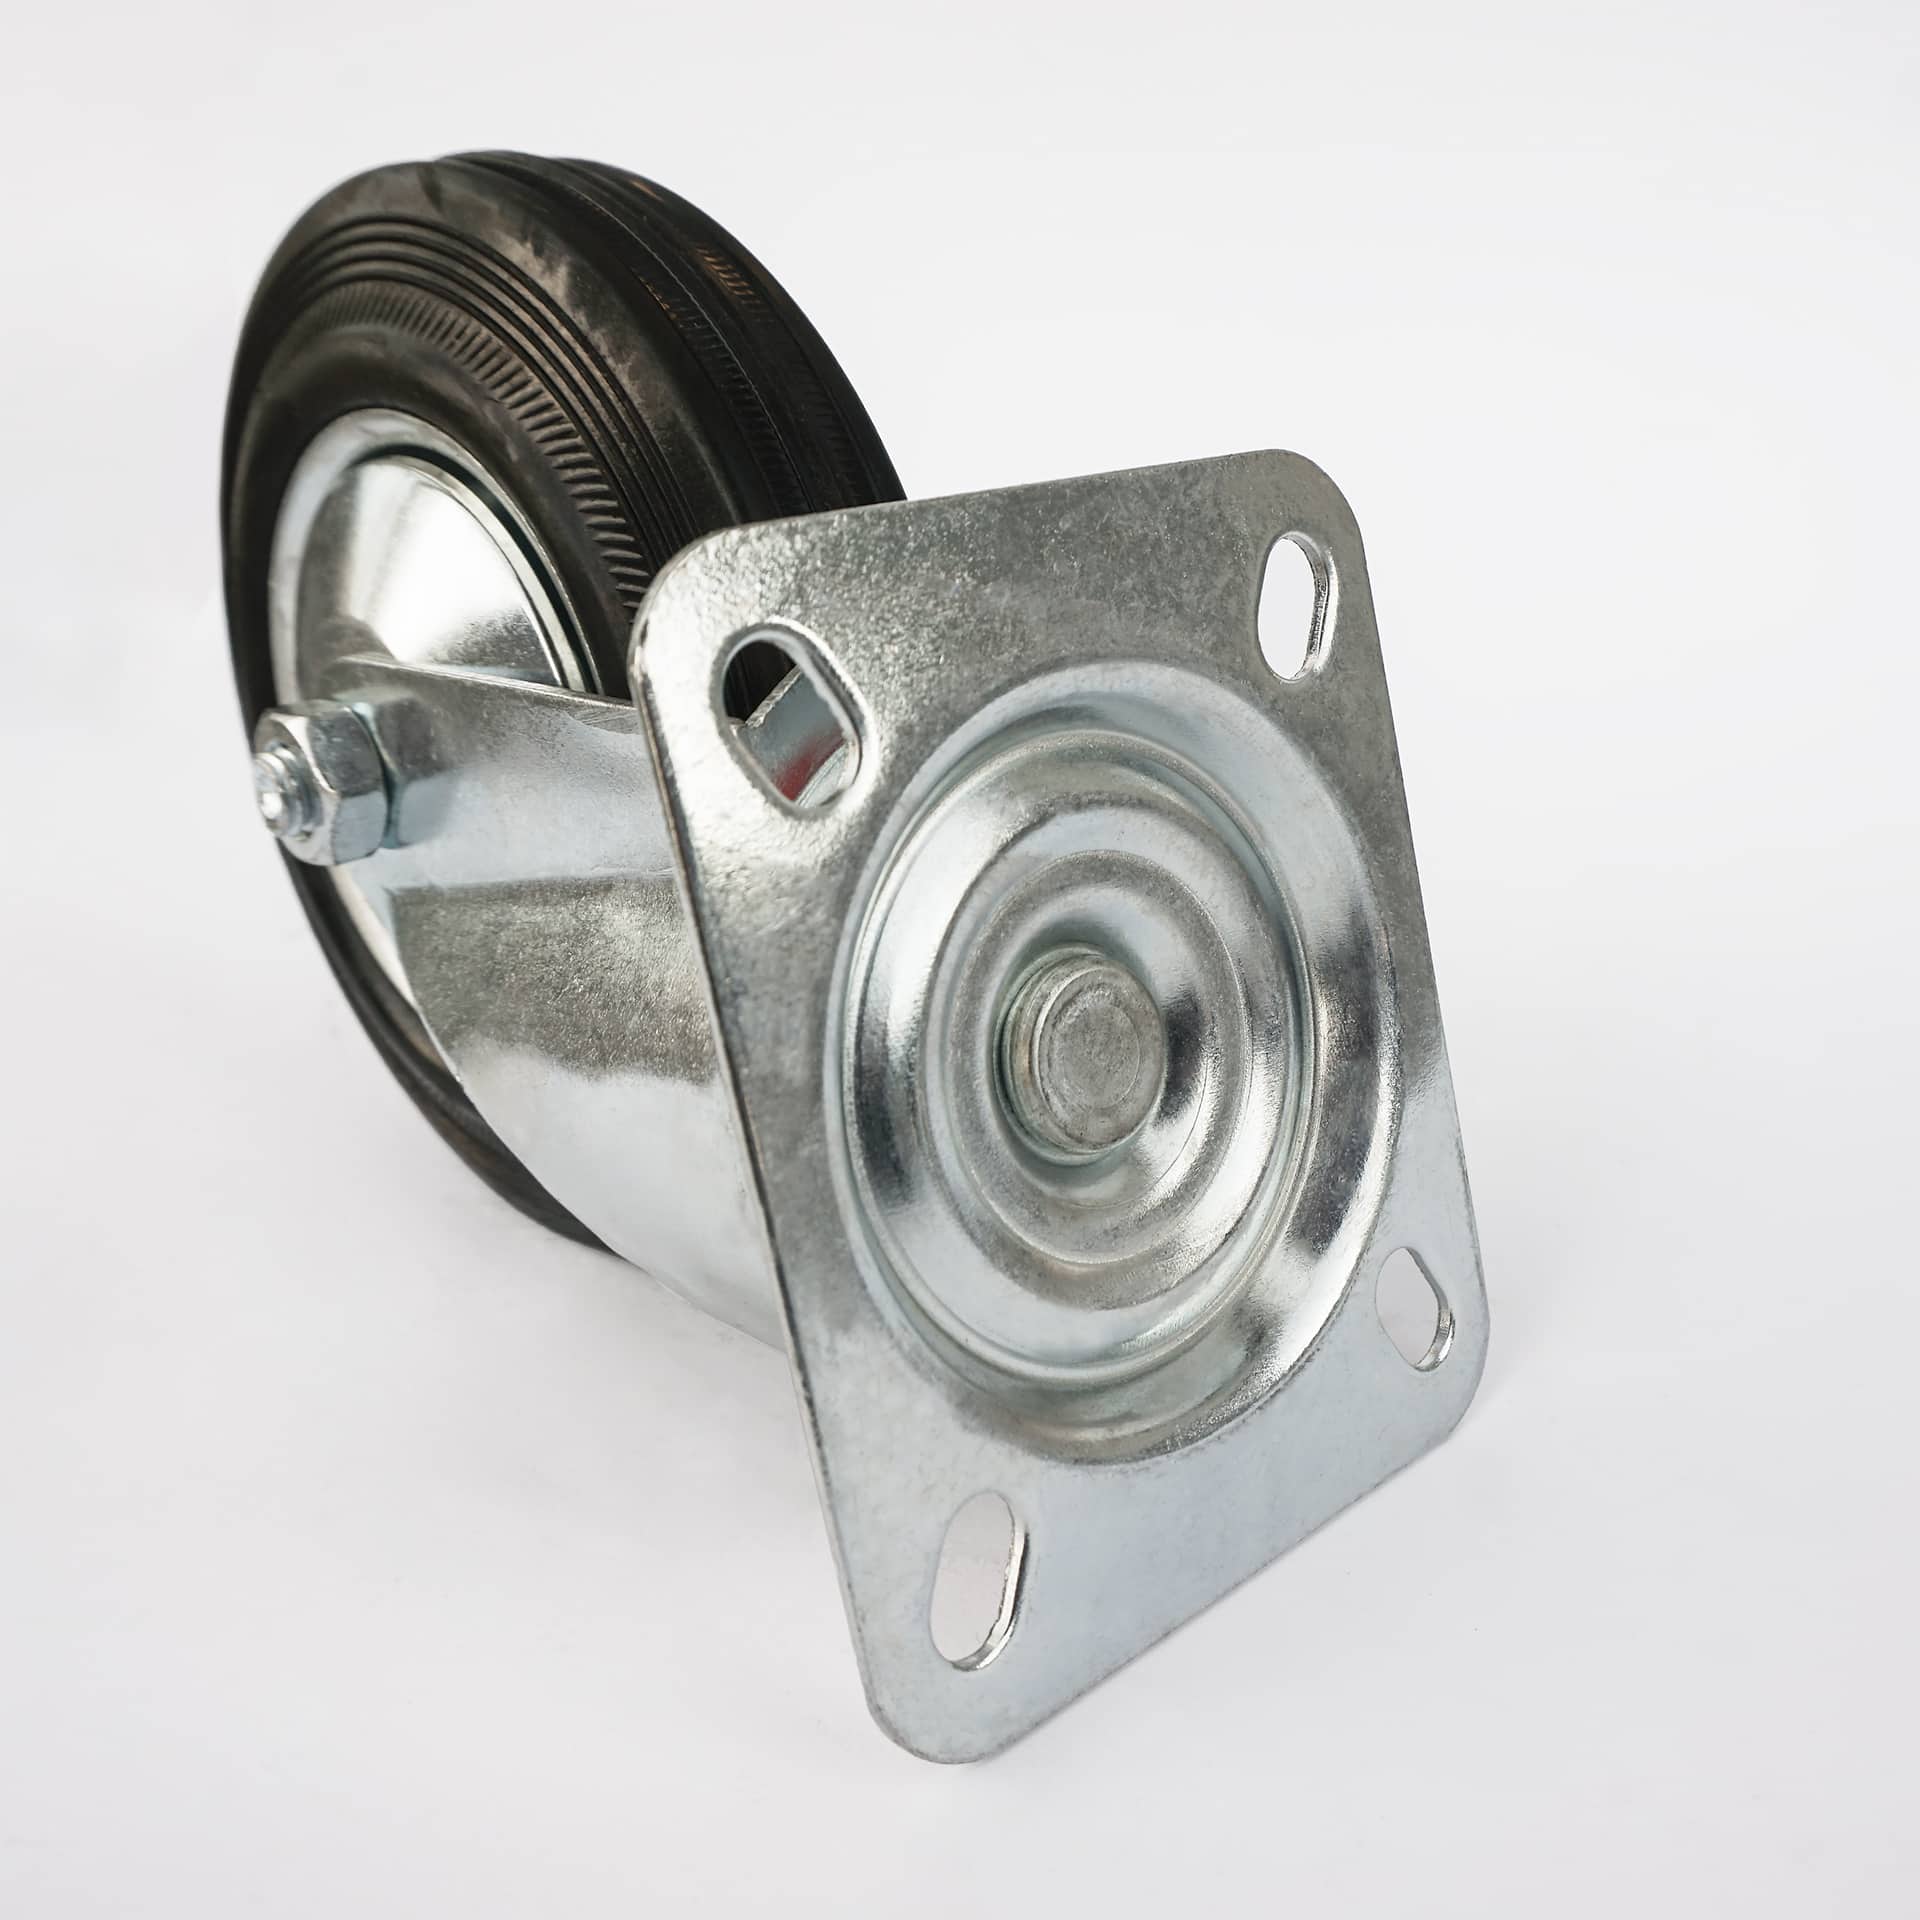 Ø 100 mm | Zestaw kołowy obrotowy bez hamulca: metal guma, płyta mocująca, łożysko wałeczkowe, nośność 50 kg | 4001-100 - płyta mocująca